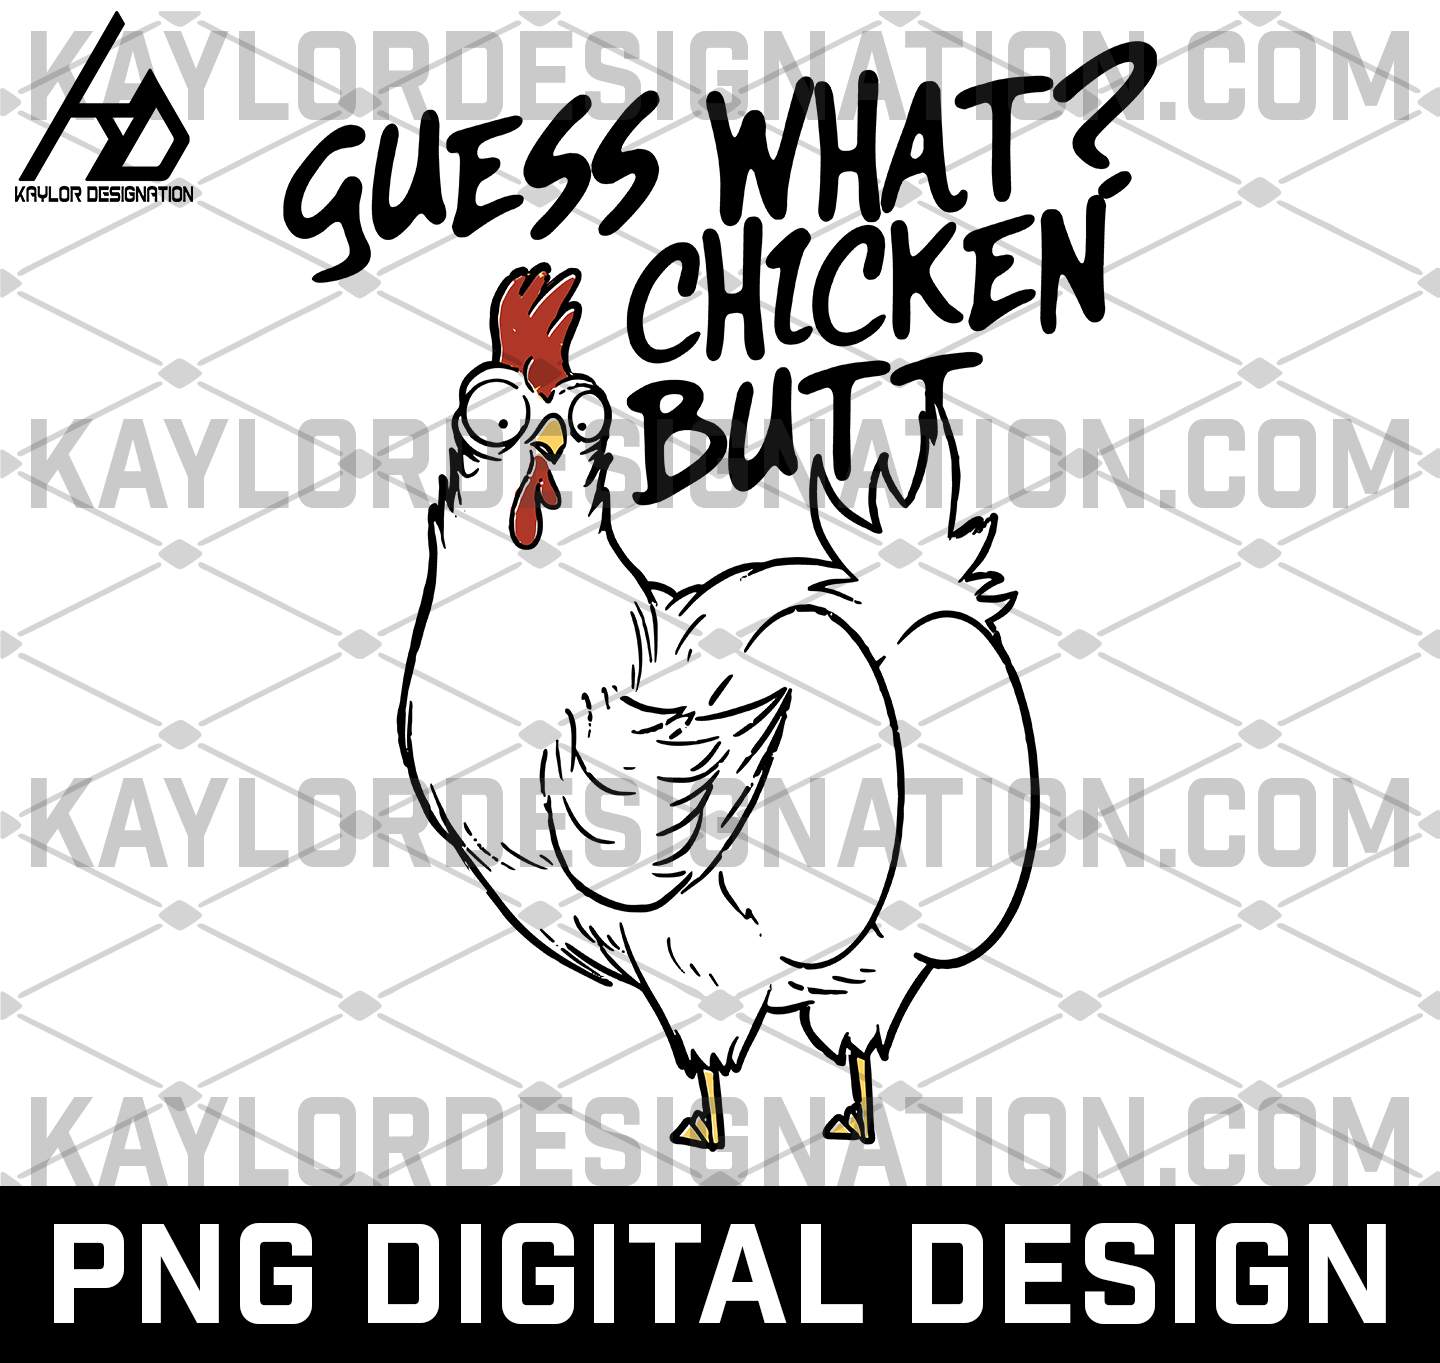 What's Up Chicken Butt Art